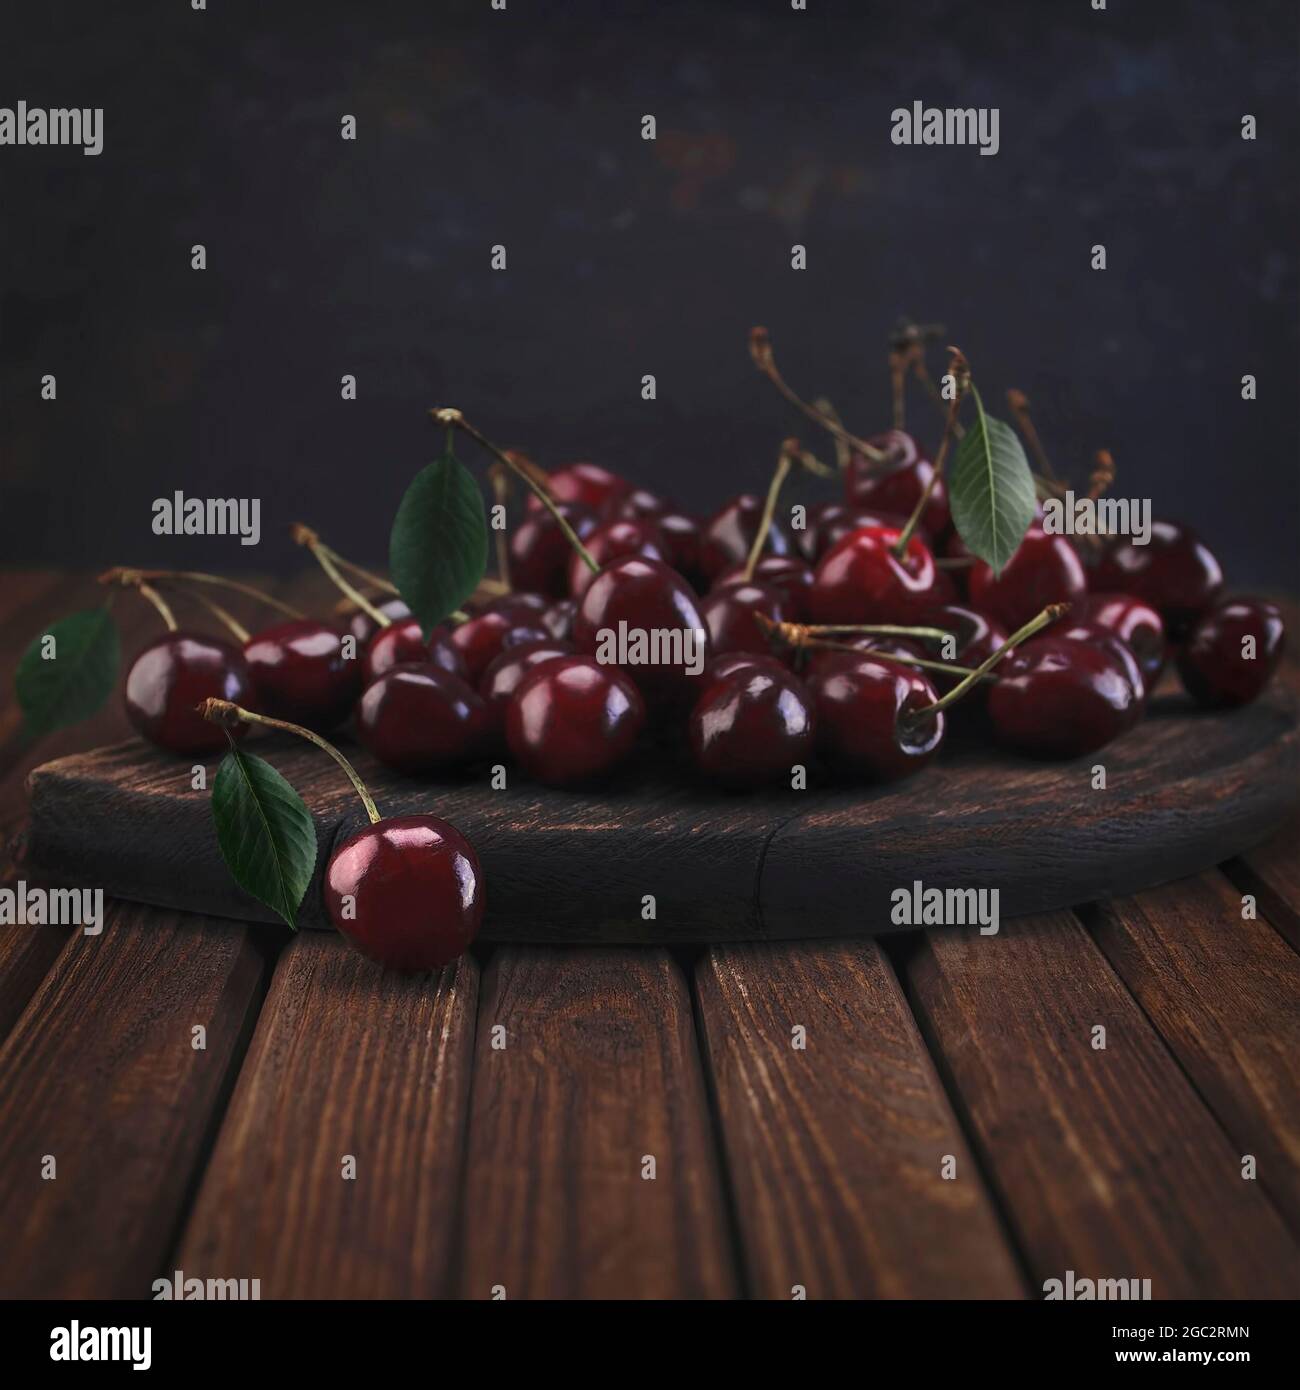 Tablas de picar con frutas fotografías e imágenes de alta resolución - Alamy